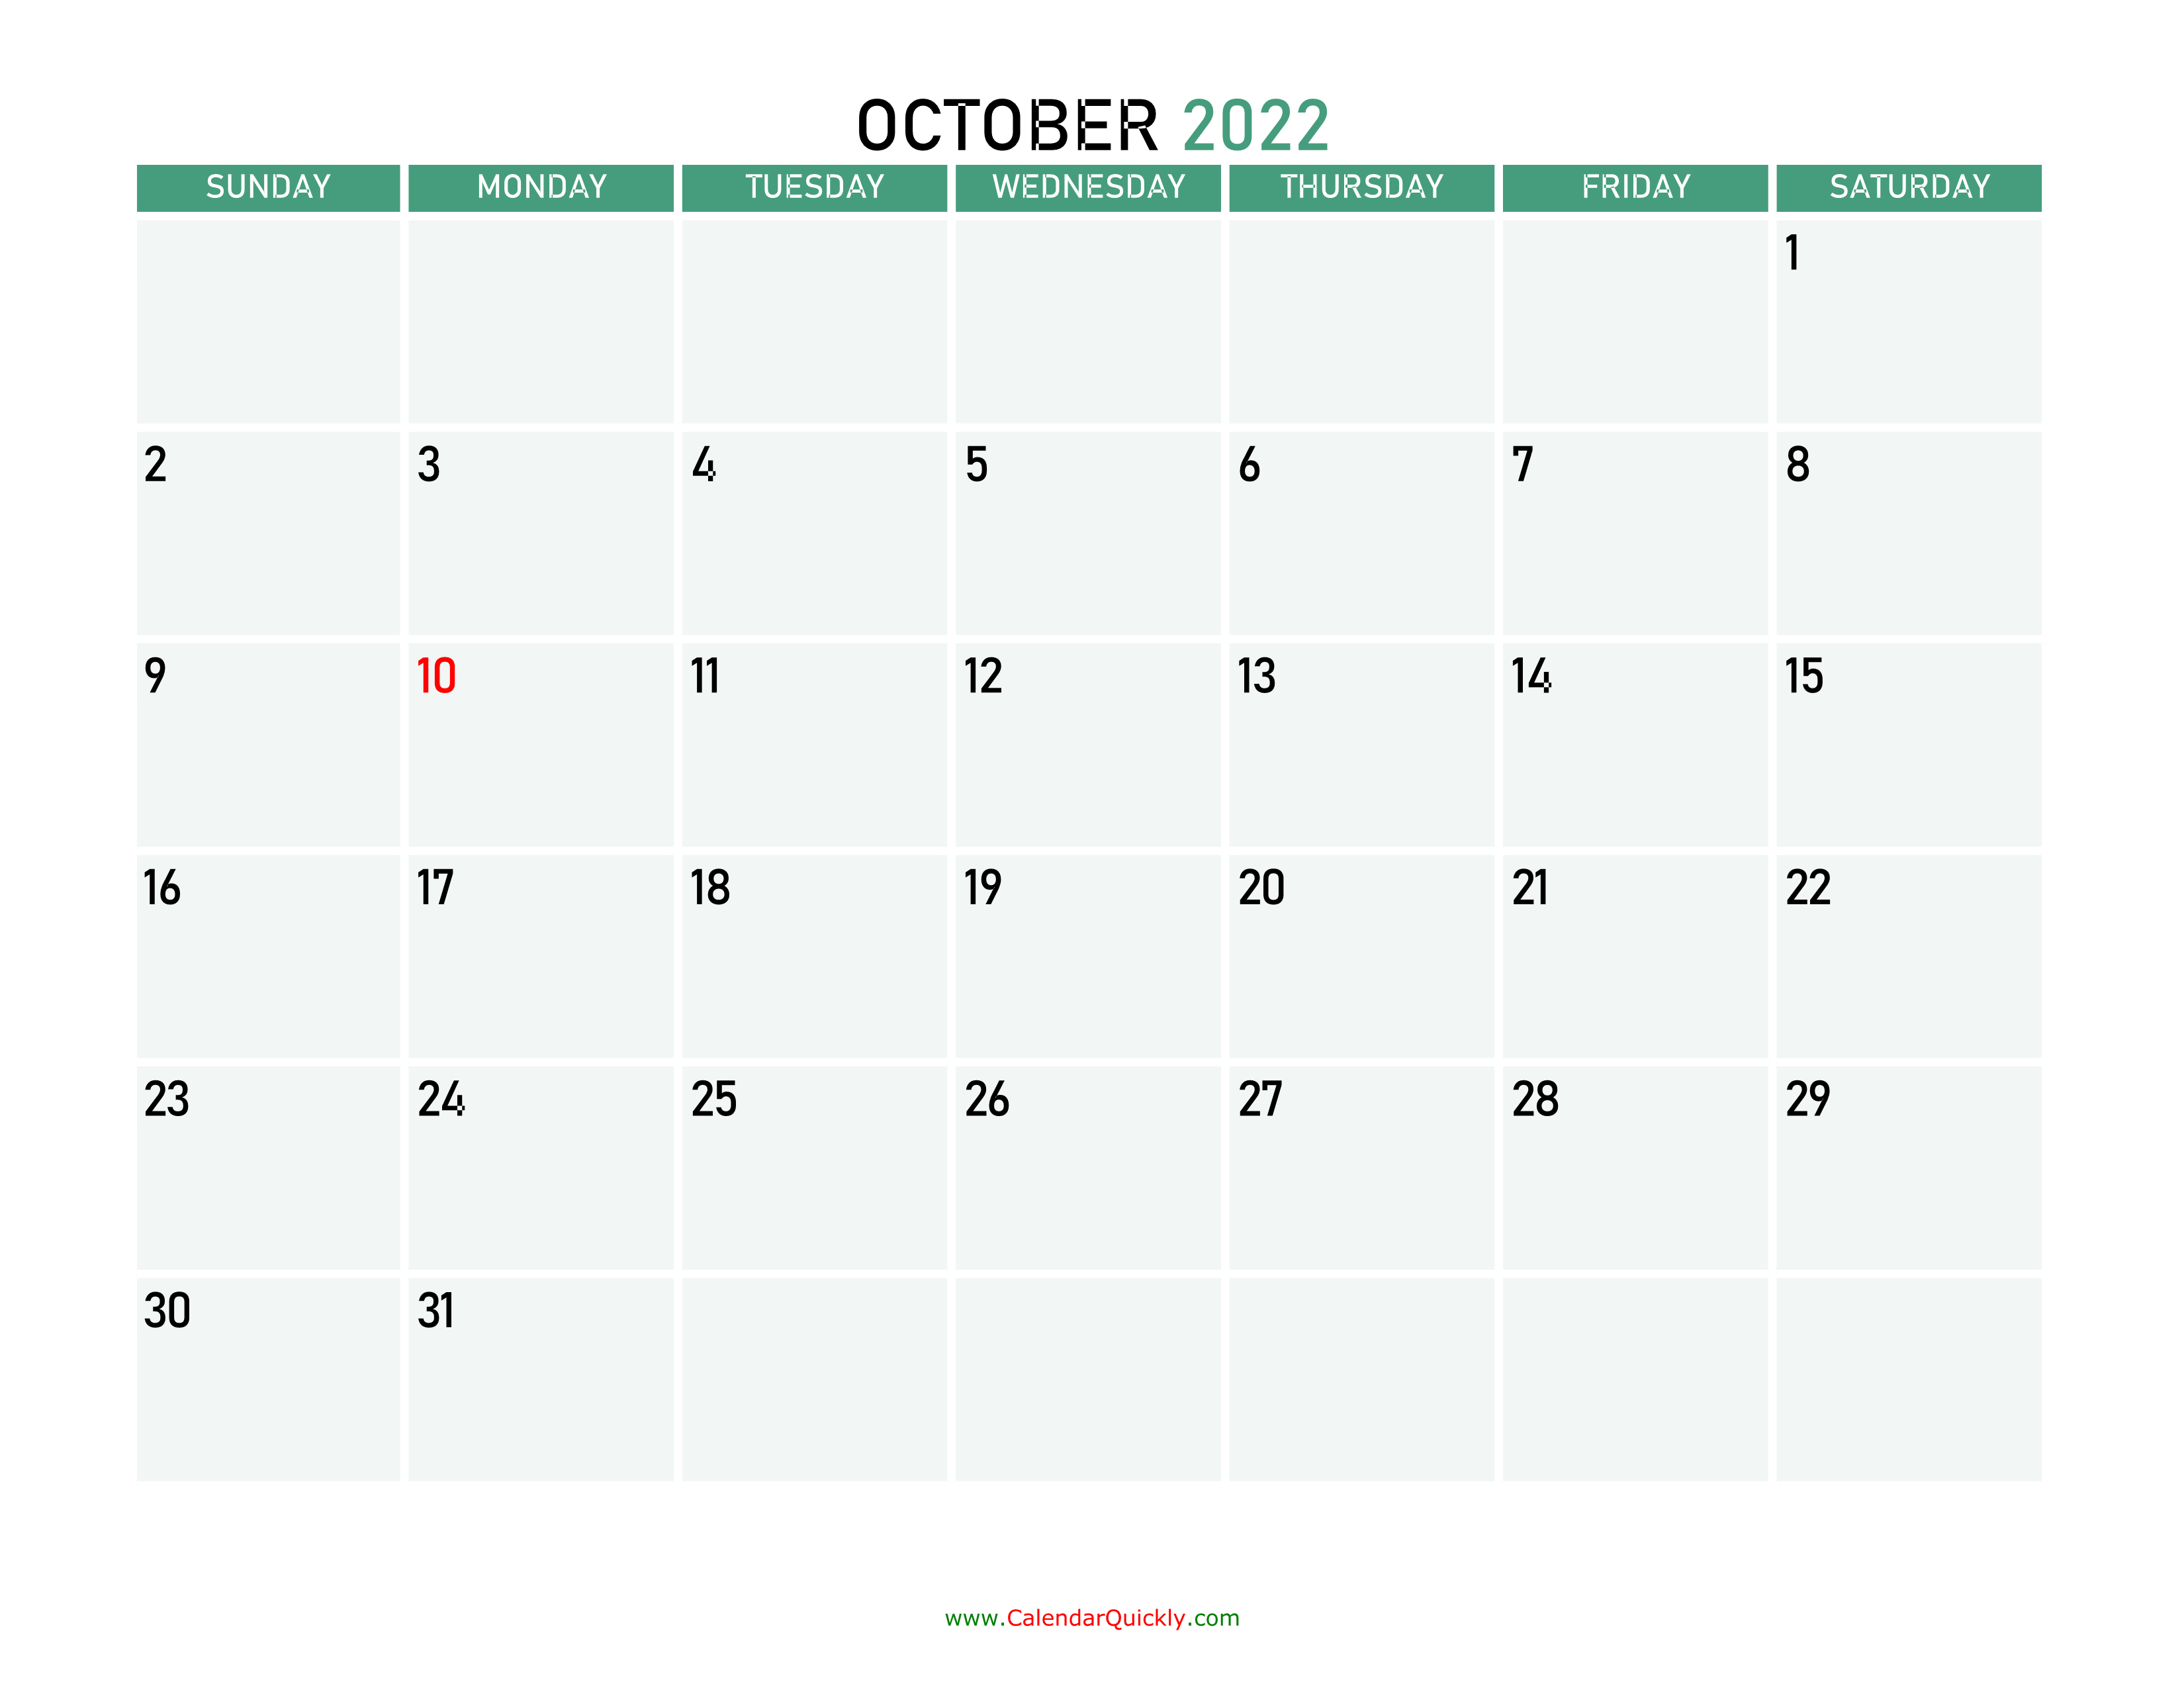 october-2022-calendars-calendar-quickly